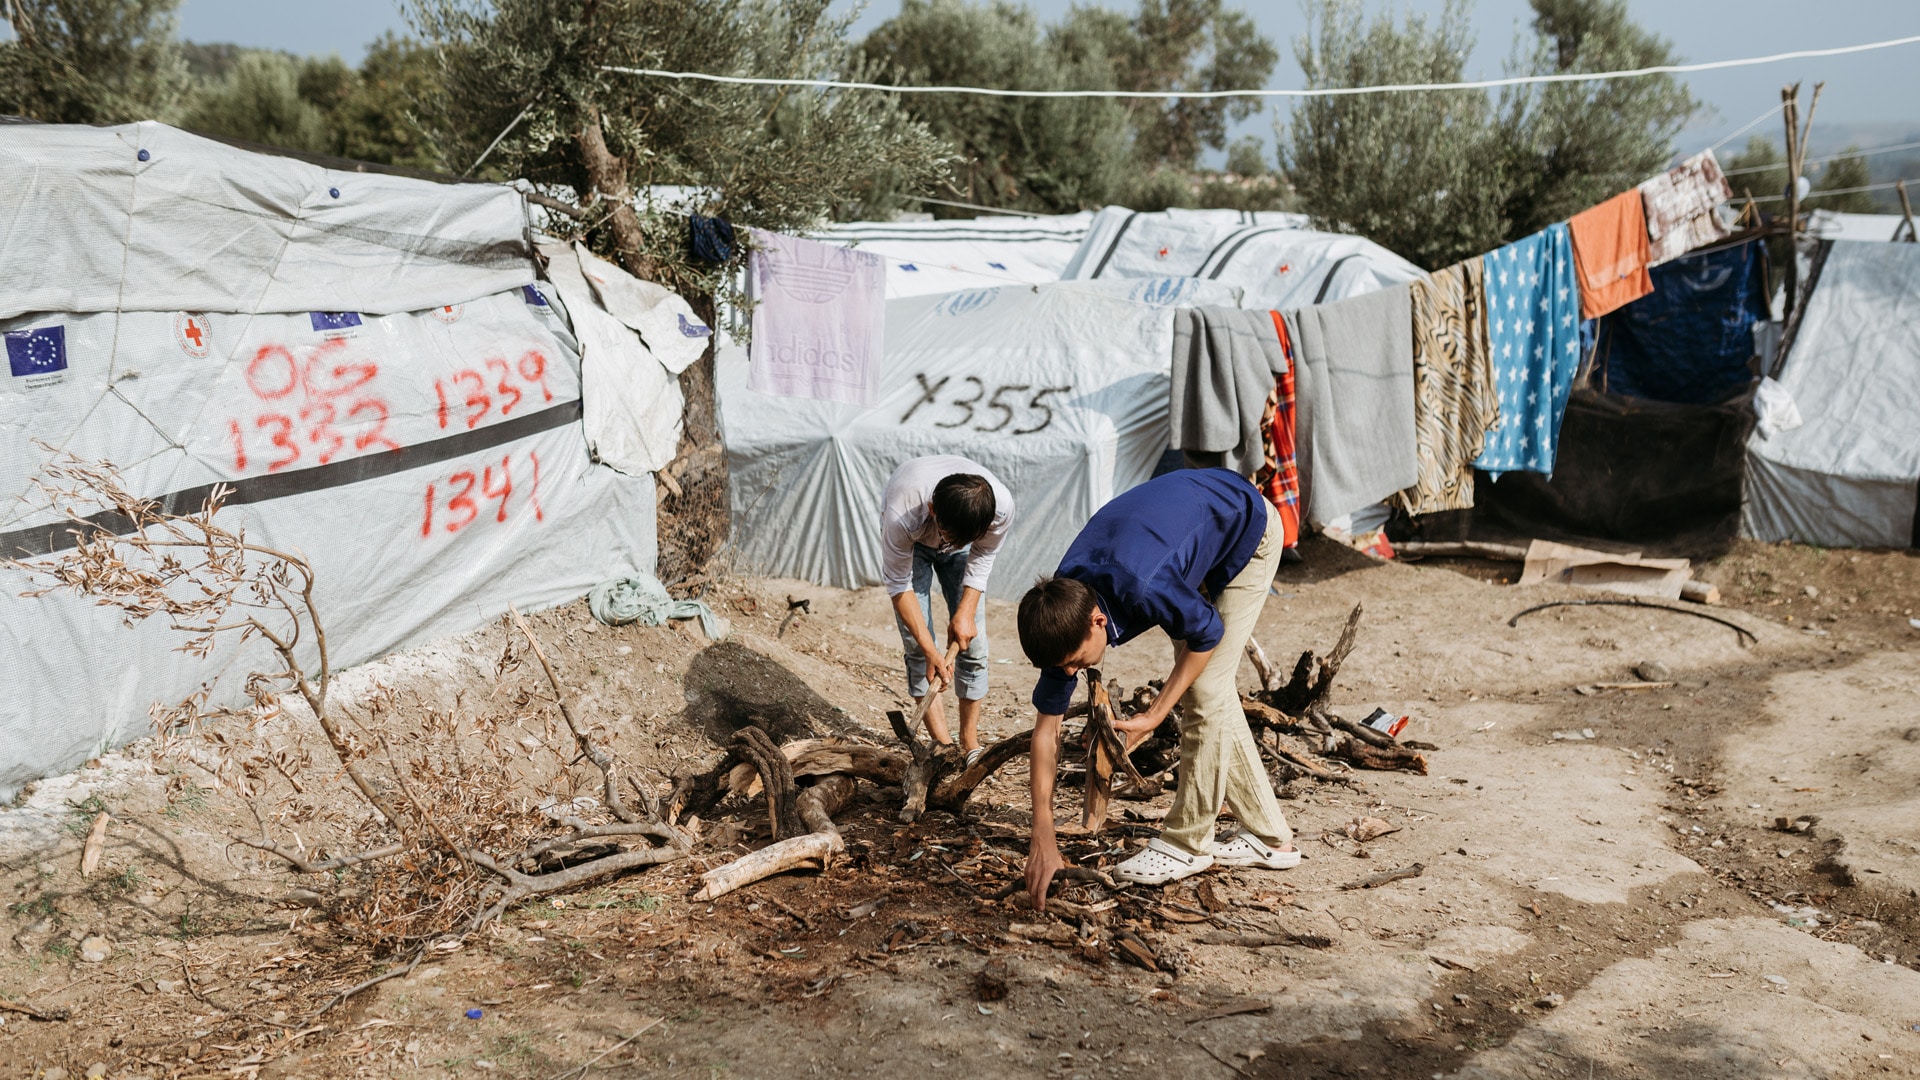 Die Unterkünfte im Camp reichen schon lange nicht mehr aus, viele leben in Zelten und selbstgebauten Verschlägen